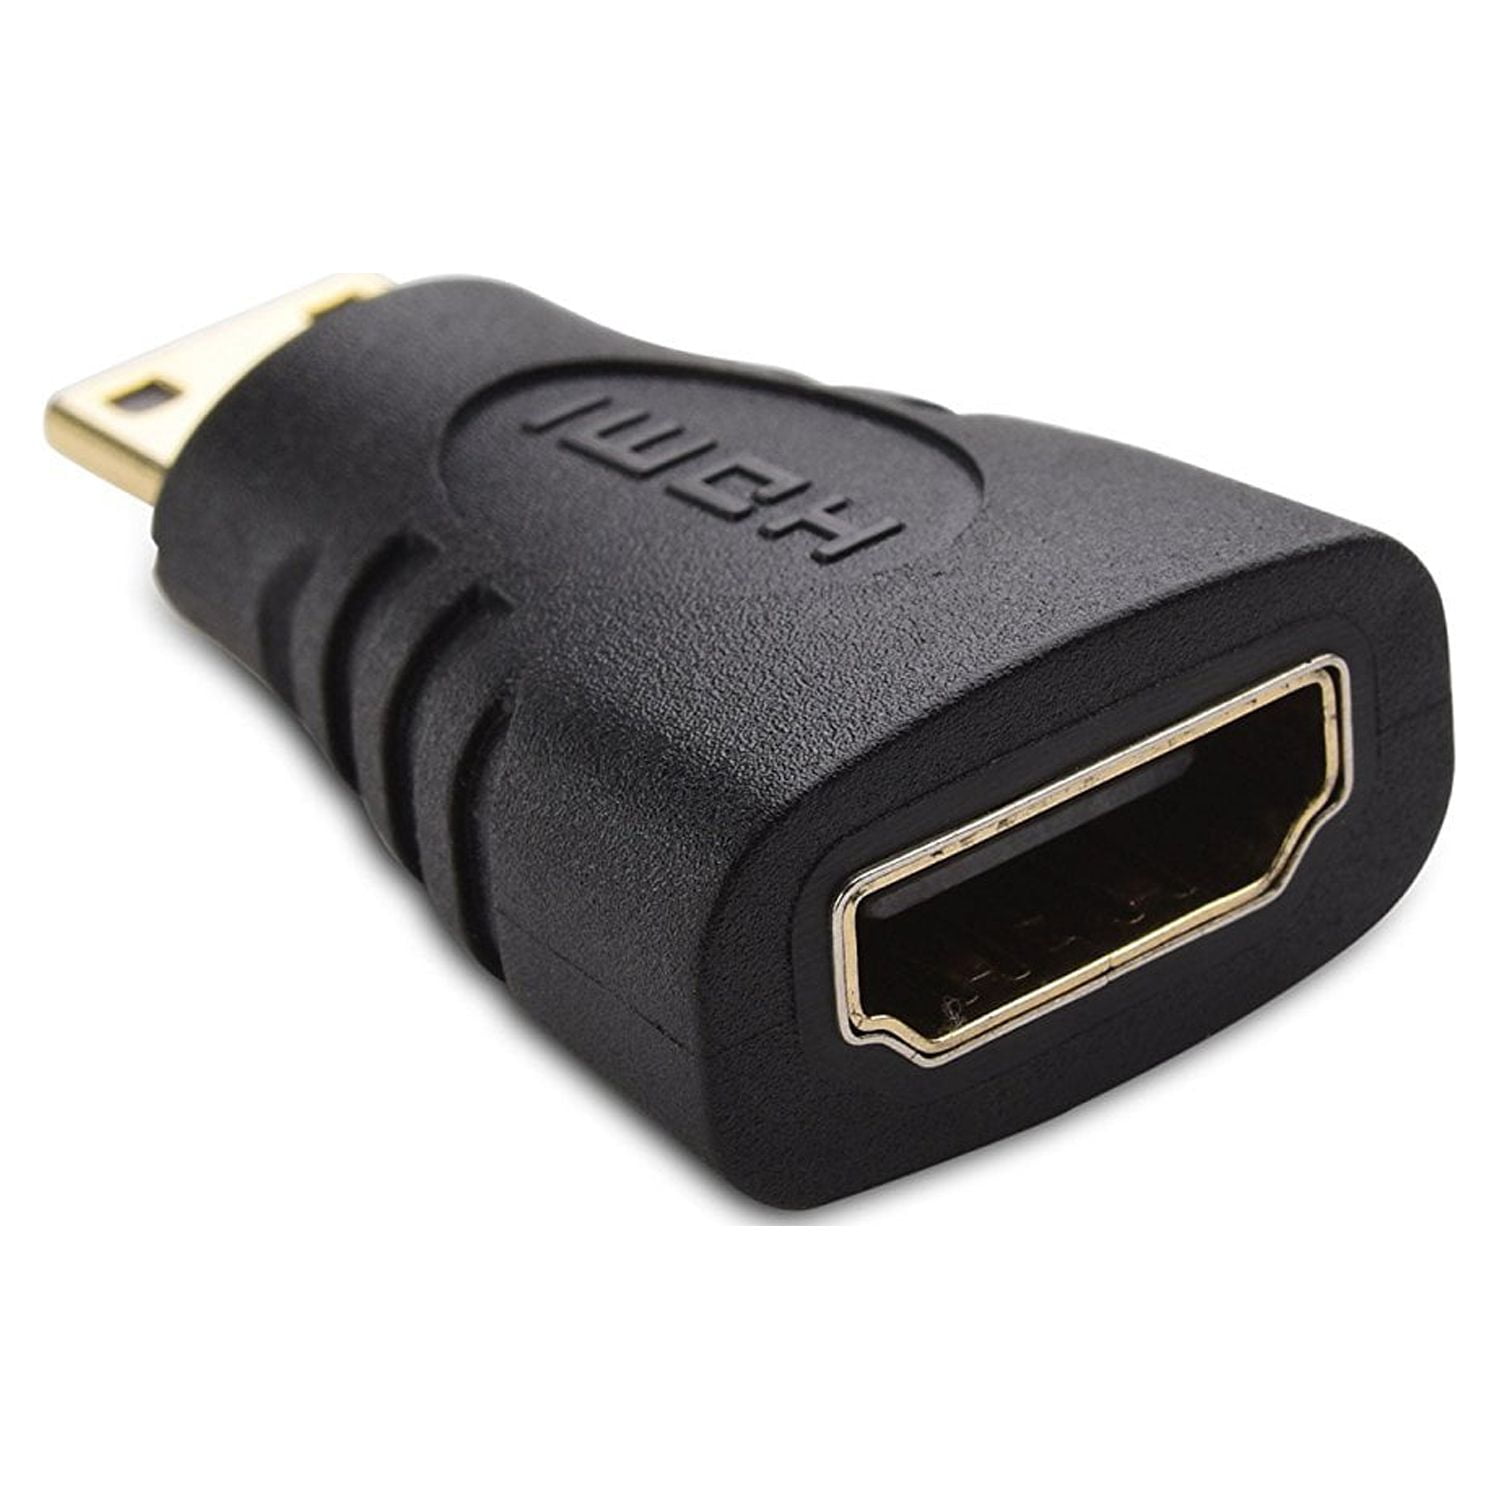 Cable Matters Mini HDMI to HDMI / HDMI to Mini HDMI Adapter 